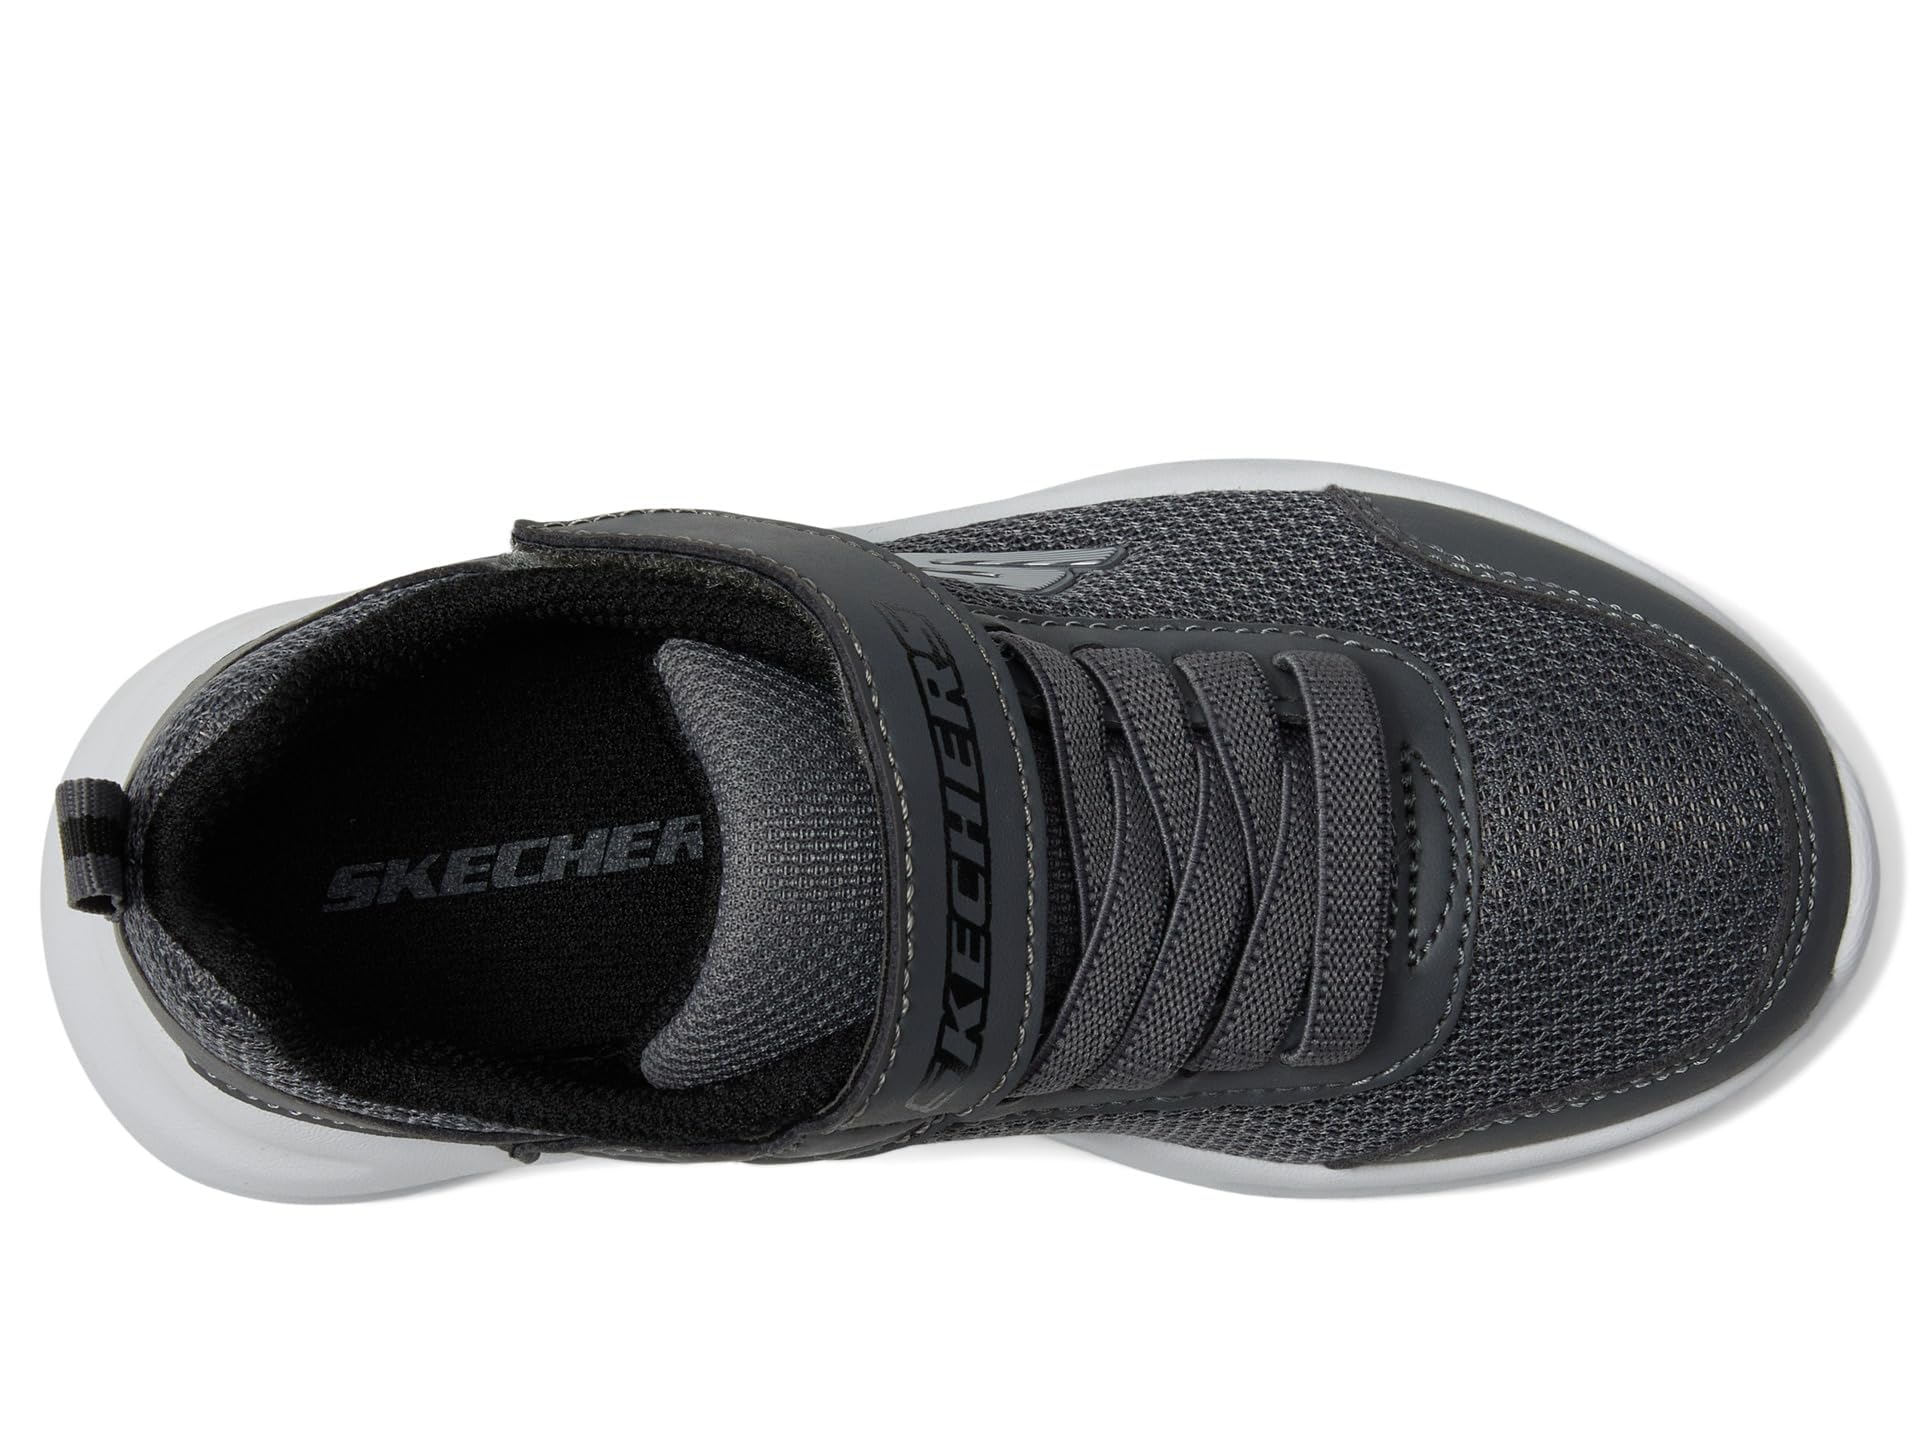 Skechers Unisex-Child Dynamatic Sneaker